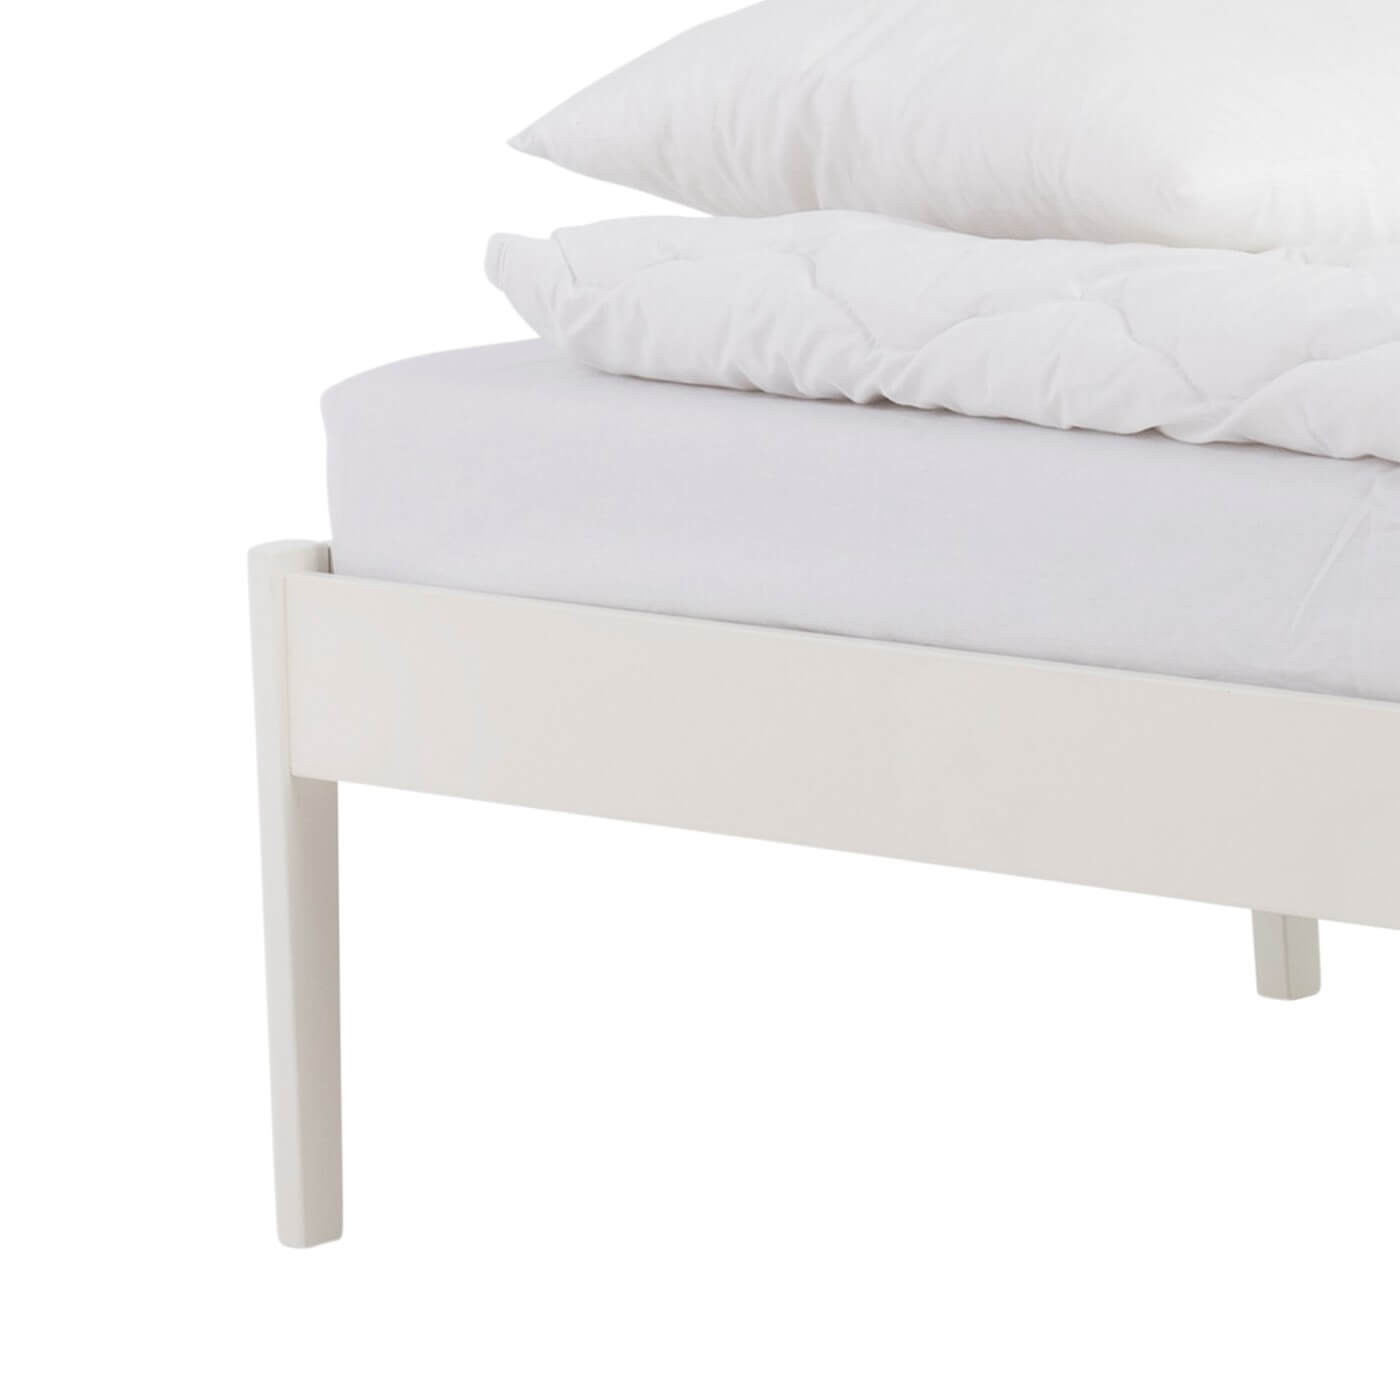 Białe łóżko bez zagłówka AVANTI. Wysoka prosta biała noga białego łózka jednoosobowego do sypialni z litego drewna brzozy skandynawskiej lakierowanej na kolor biały. Nowoczesny minimalistyczny design